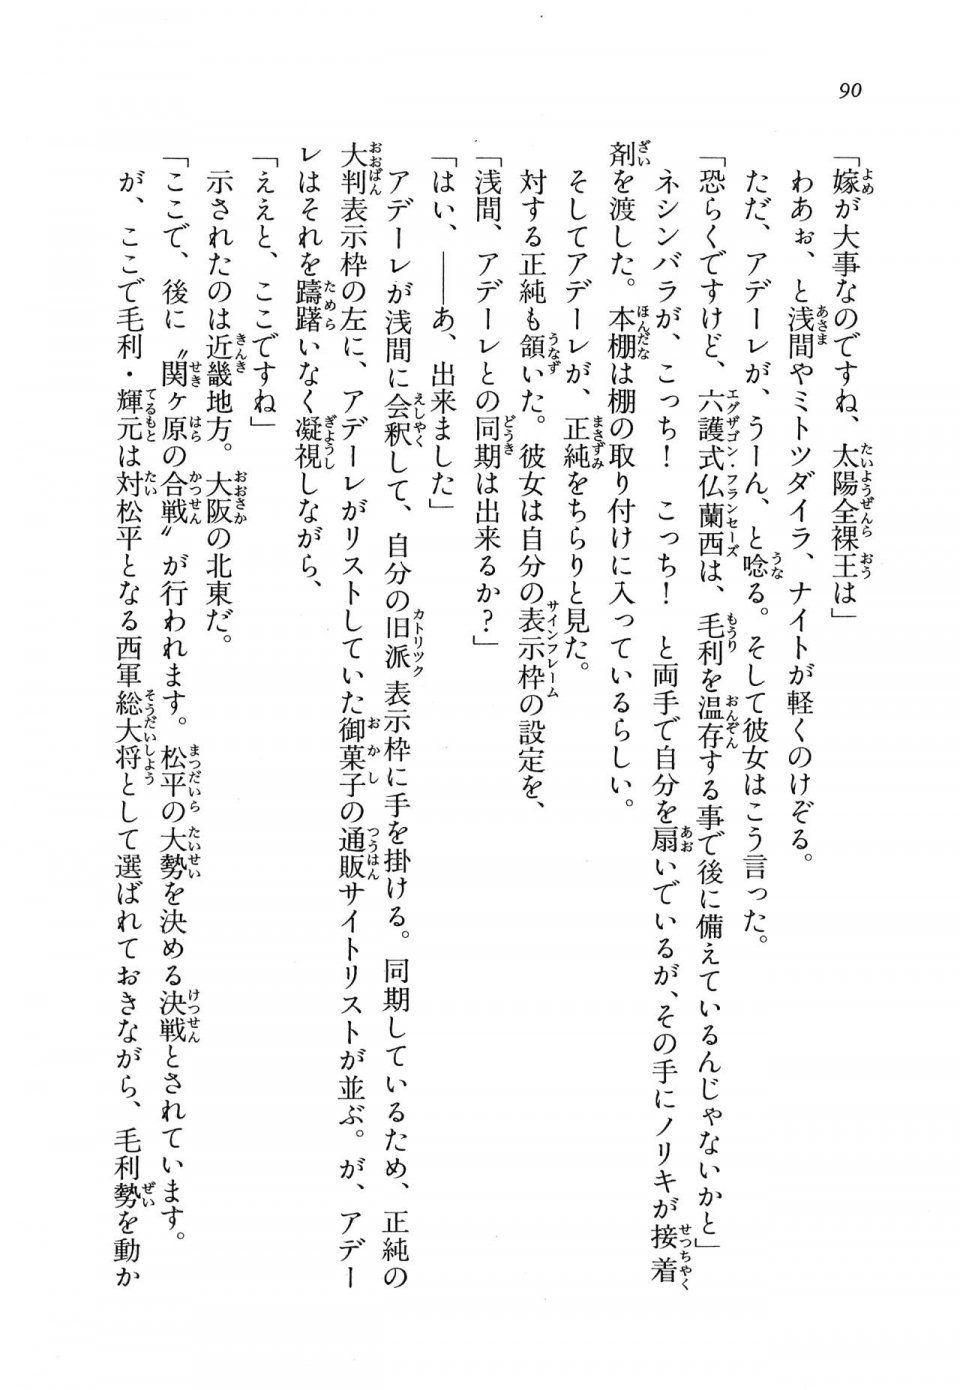 Kyoukai Senjou no Horizon LN Vol 11(5A) - Photo #90